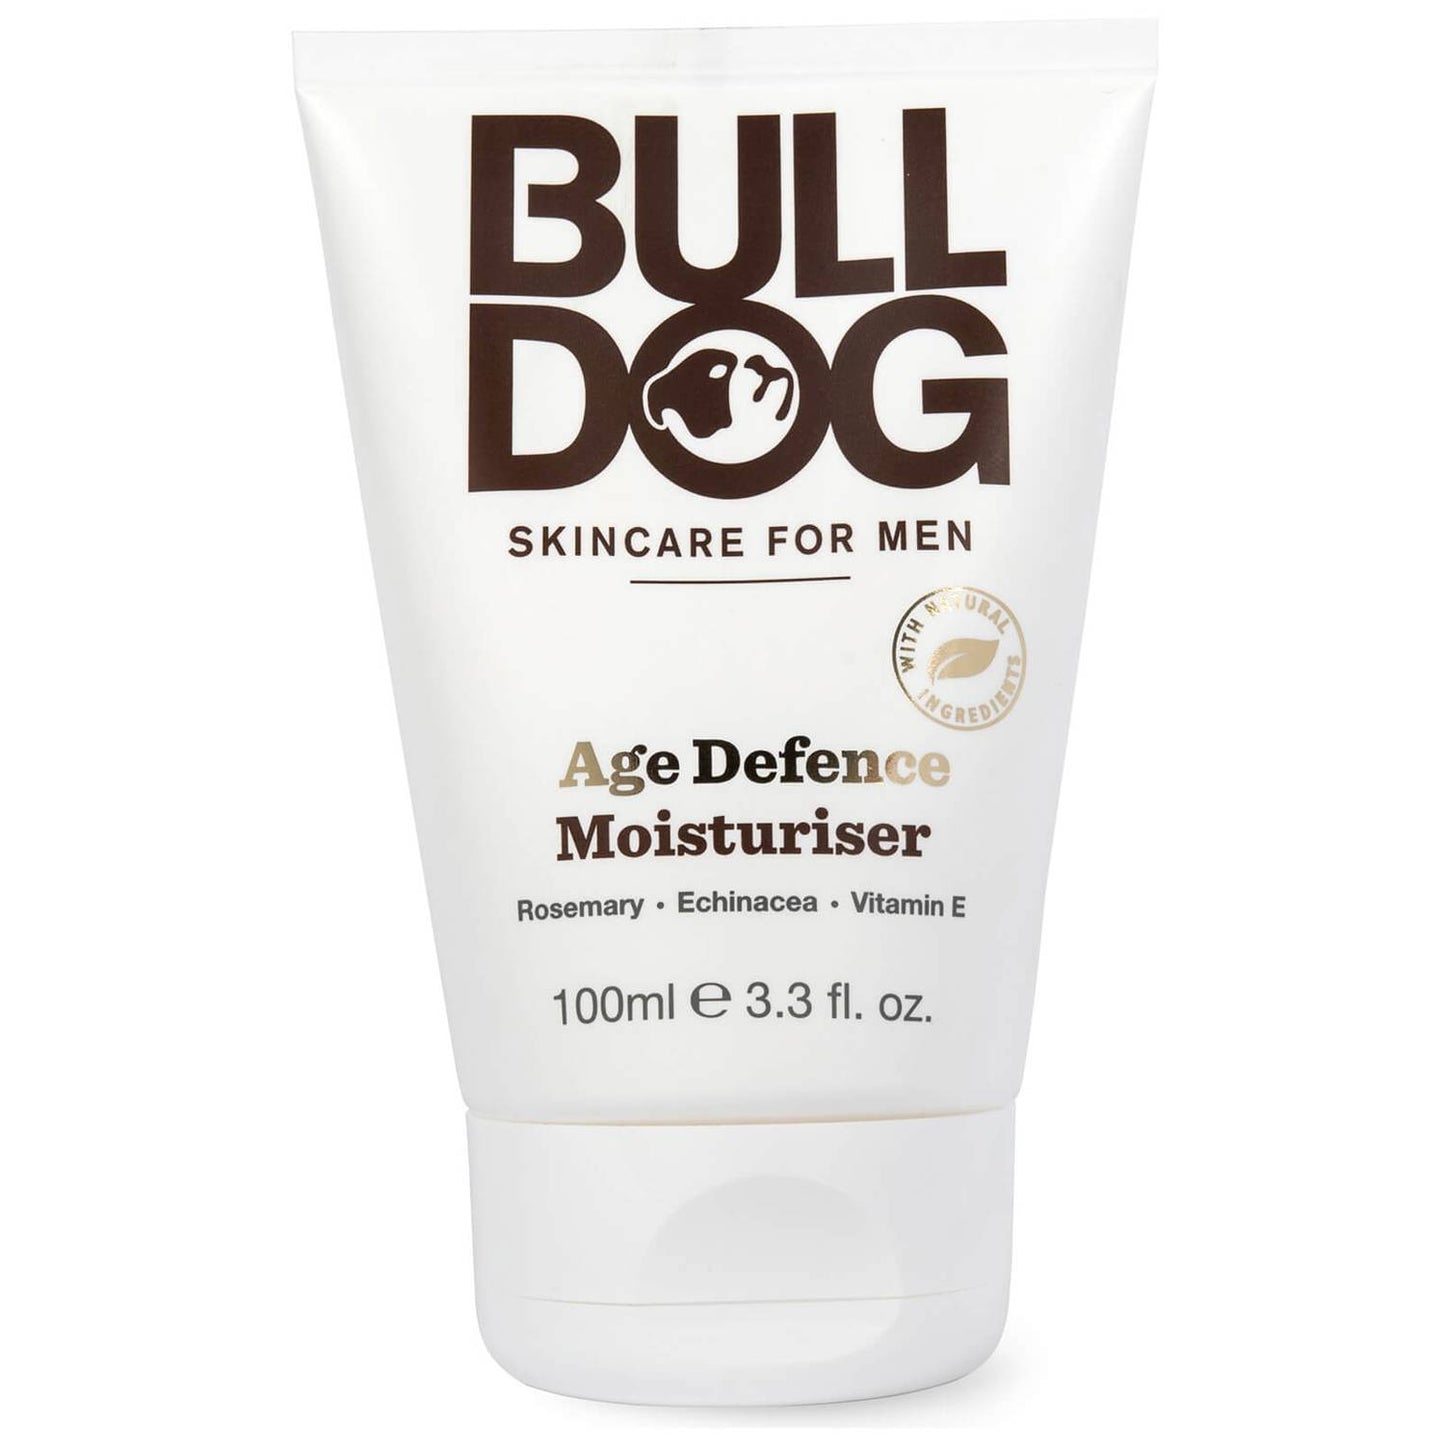 Bulldog Age Defence Moisturiser Skincare for Men 100ml